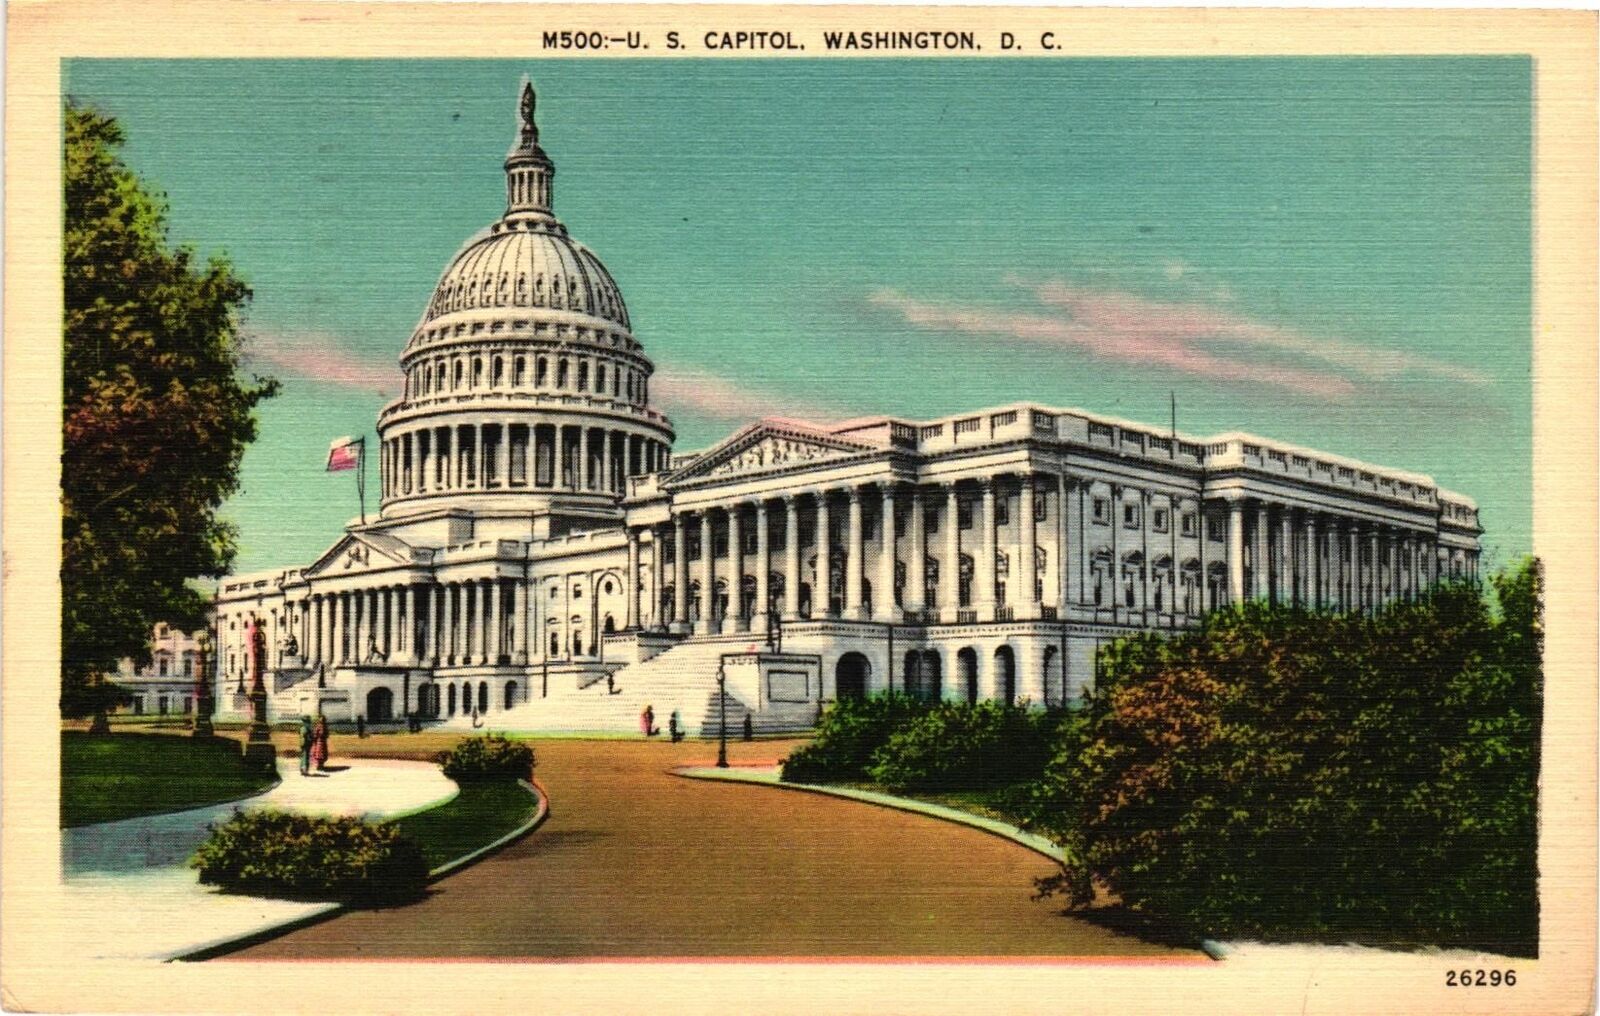 Vintage Postcard- U.S. CAPITOL, WASHINGTON, D.C.